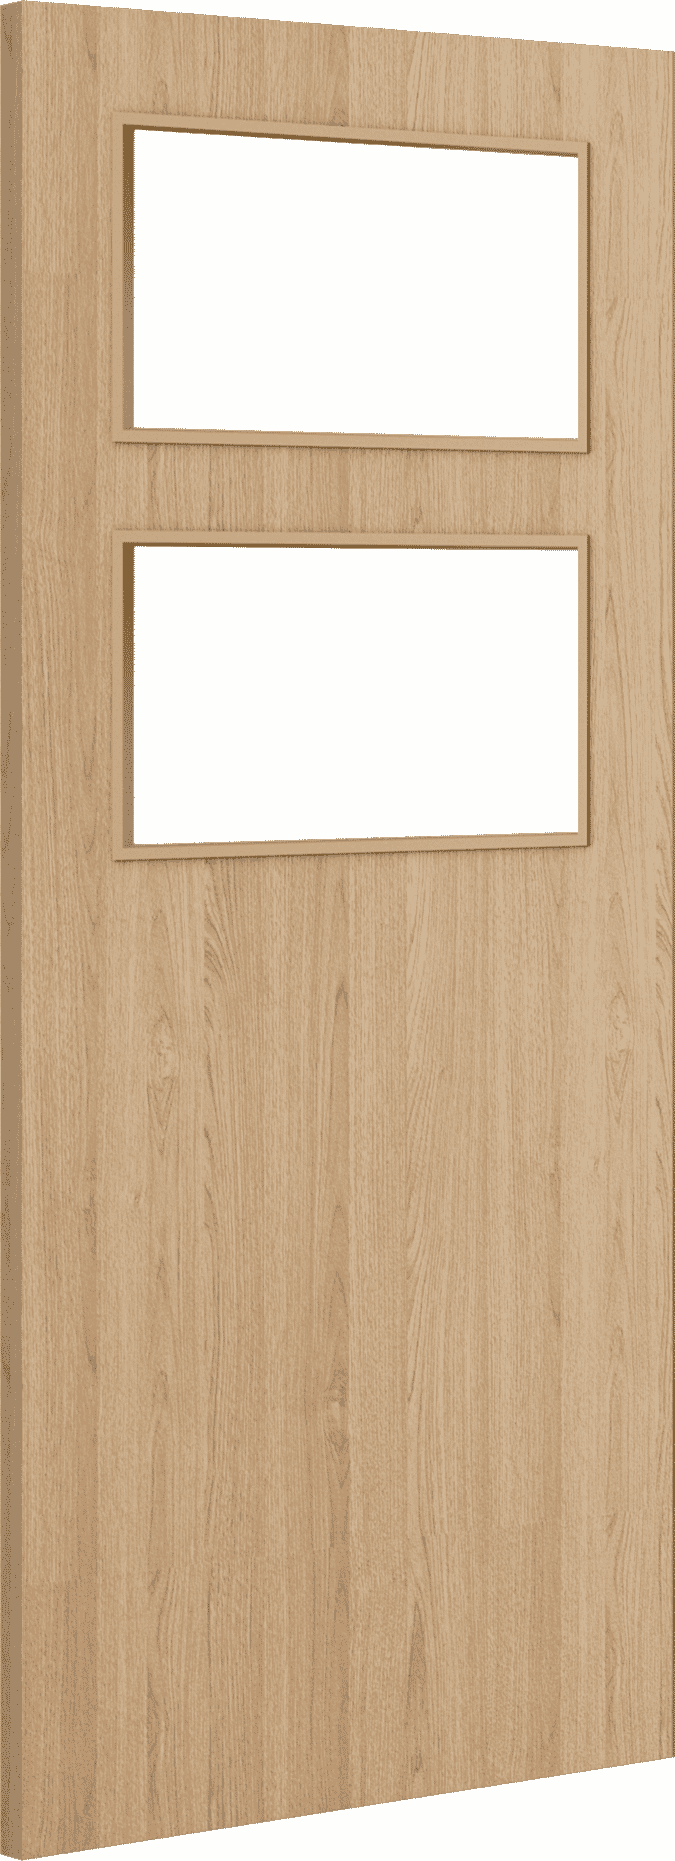 1981mm x 838mm x 54mm (33") Architectural Oak 02 Clear Glazed - Prefinished FD60 Fire Door Blank